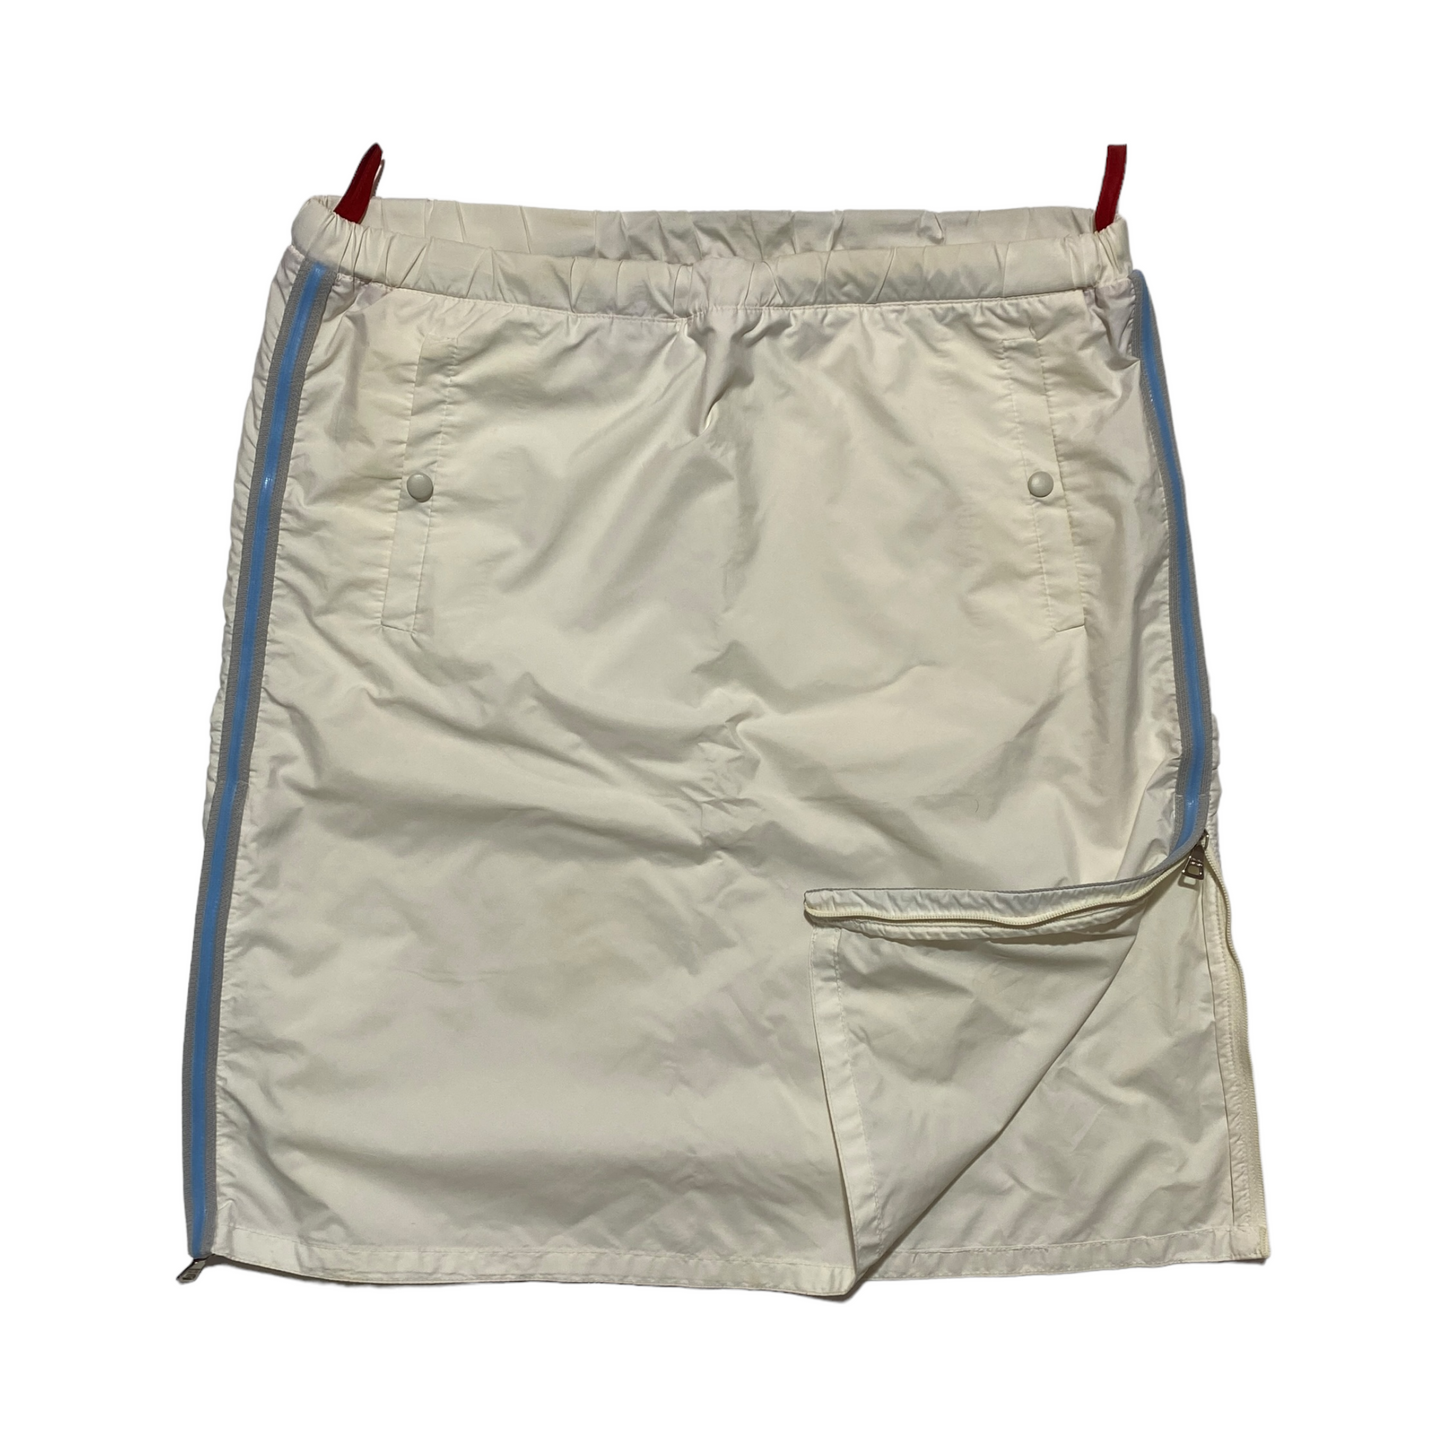 S/S 2000 Prada Sport Skirt (38W)